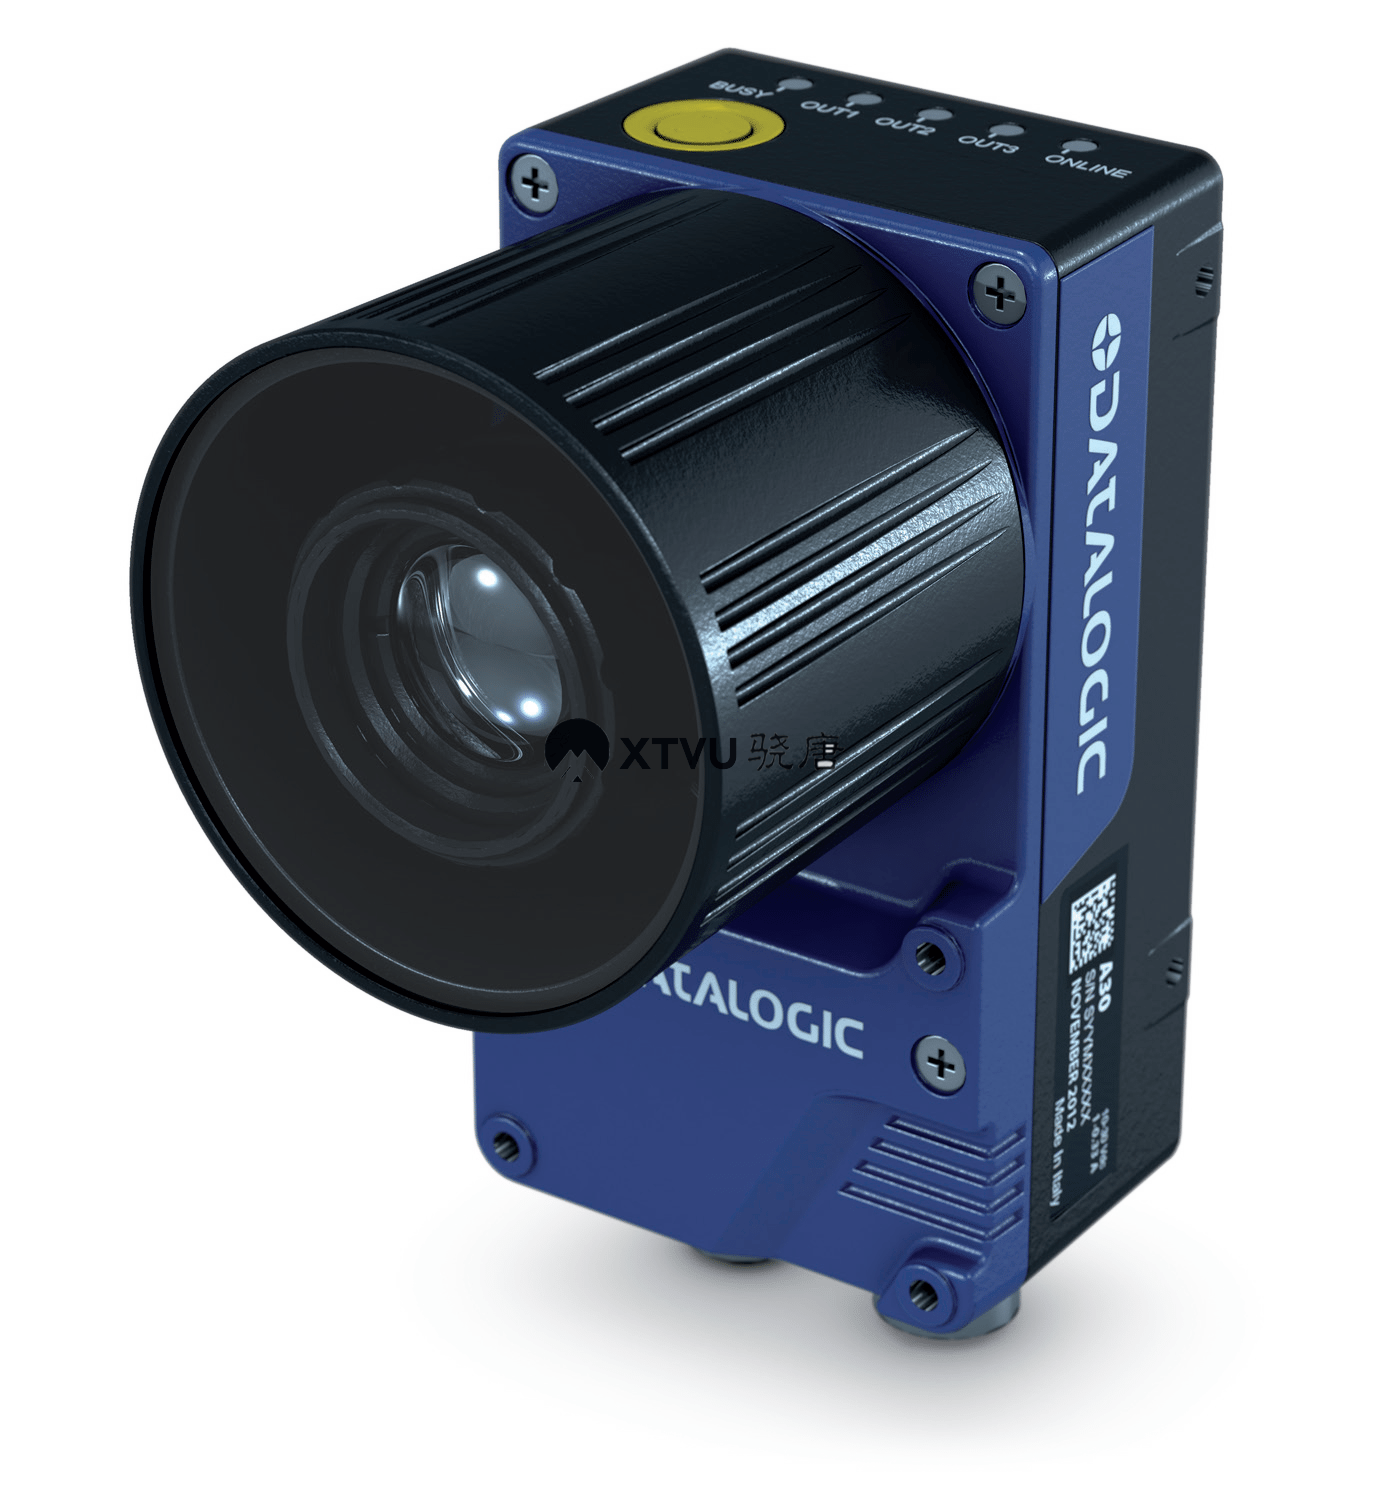 工业智能相机A30  A系列智能相机是通用型独立产品，具有极高的性价比。该系列智能相机具有防护等级高达IP67 的外壳